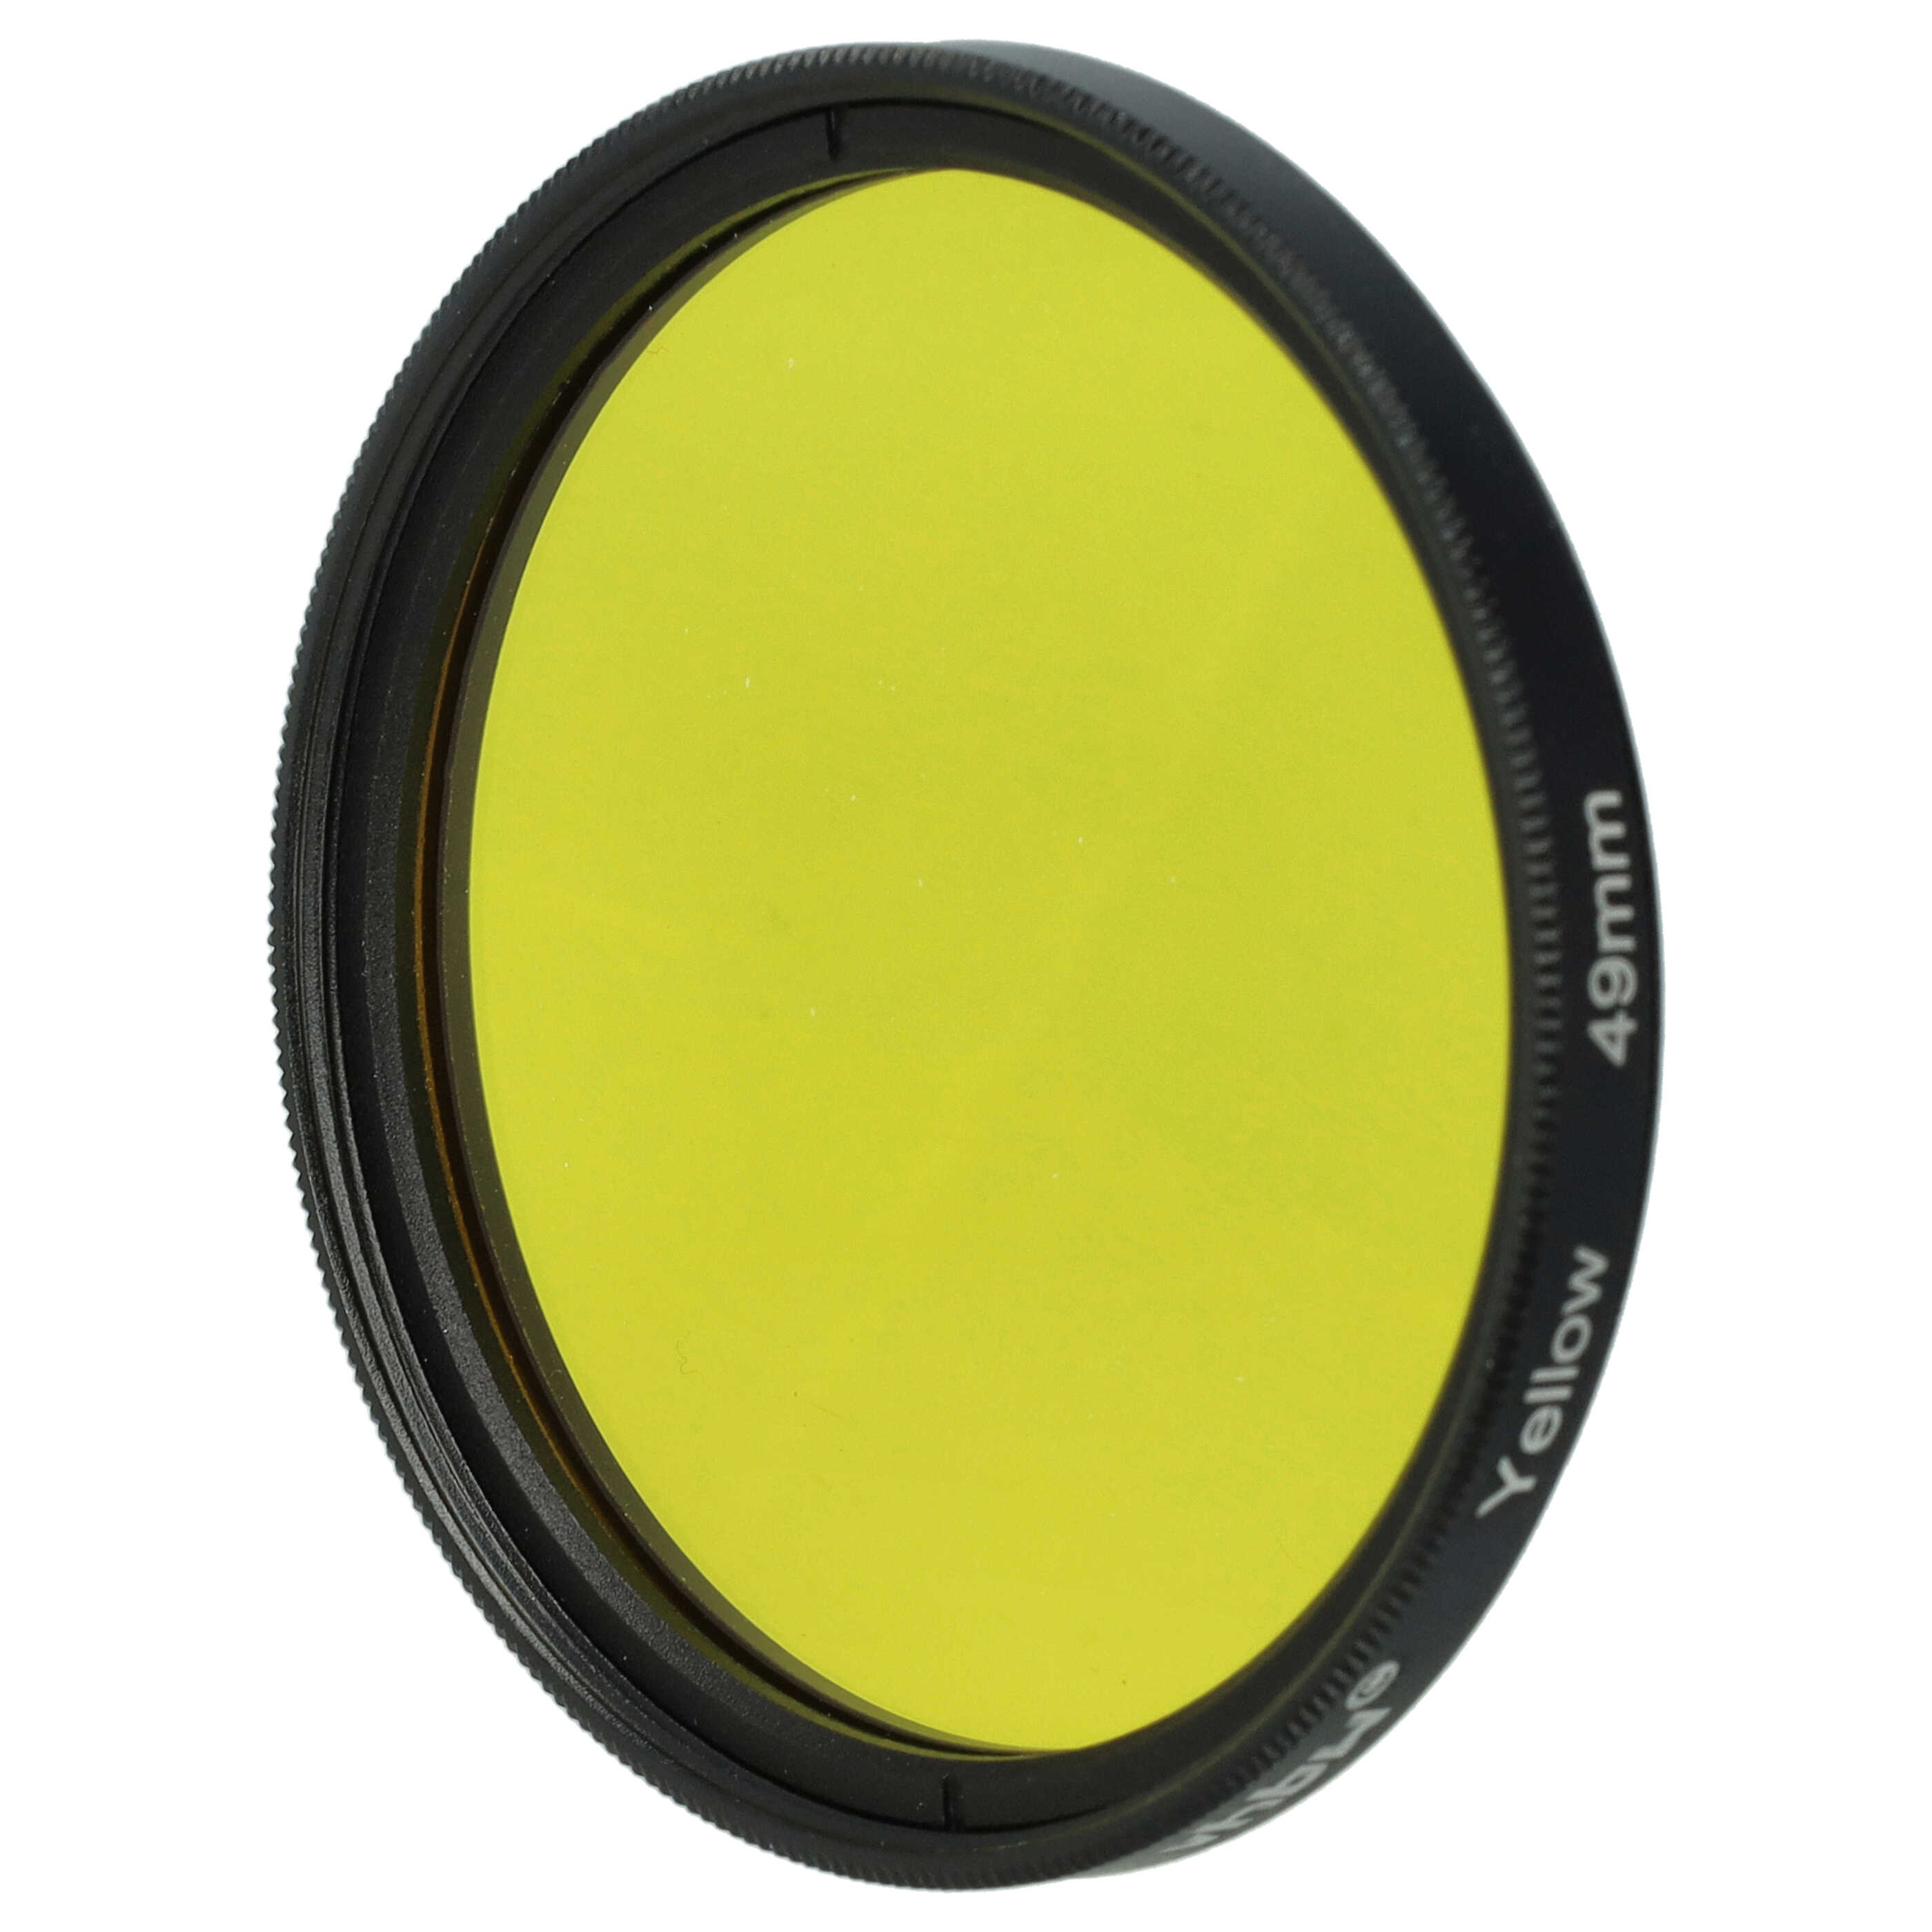 Filtro de color para objetivo de cámara con rosca de filtro de 49 mm - Filtro amarillo